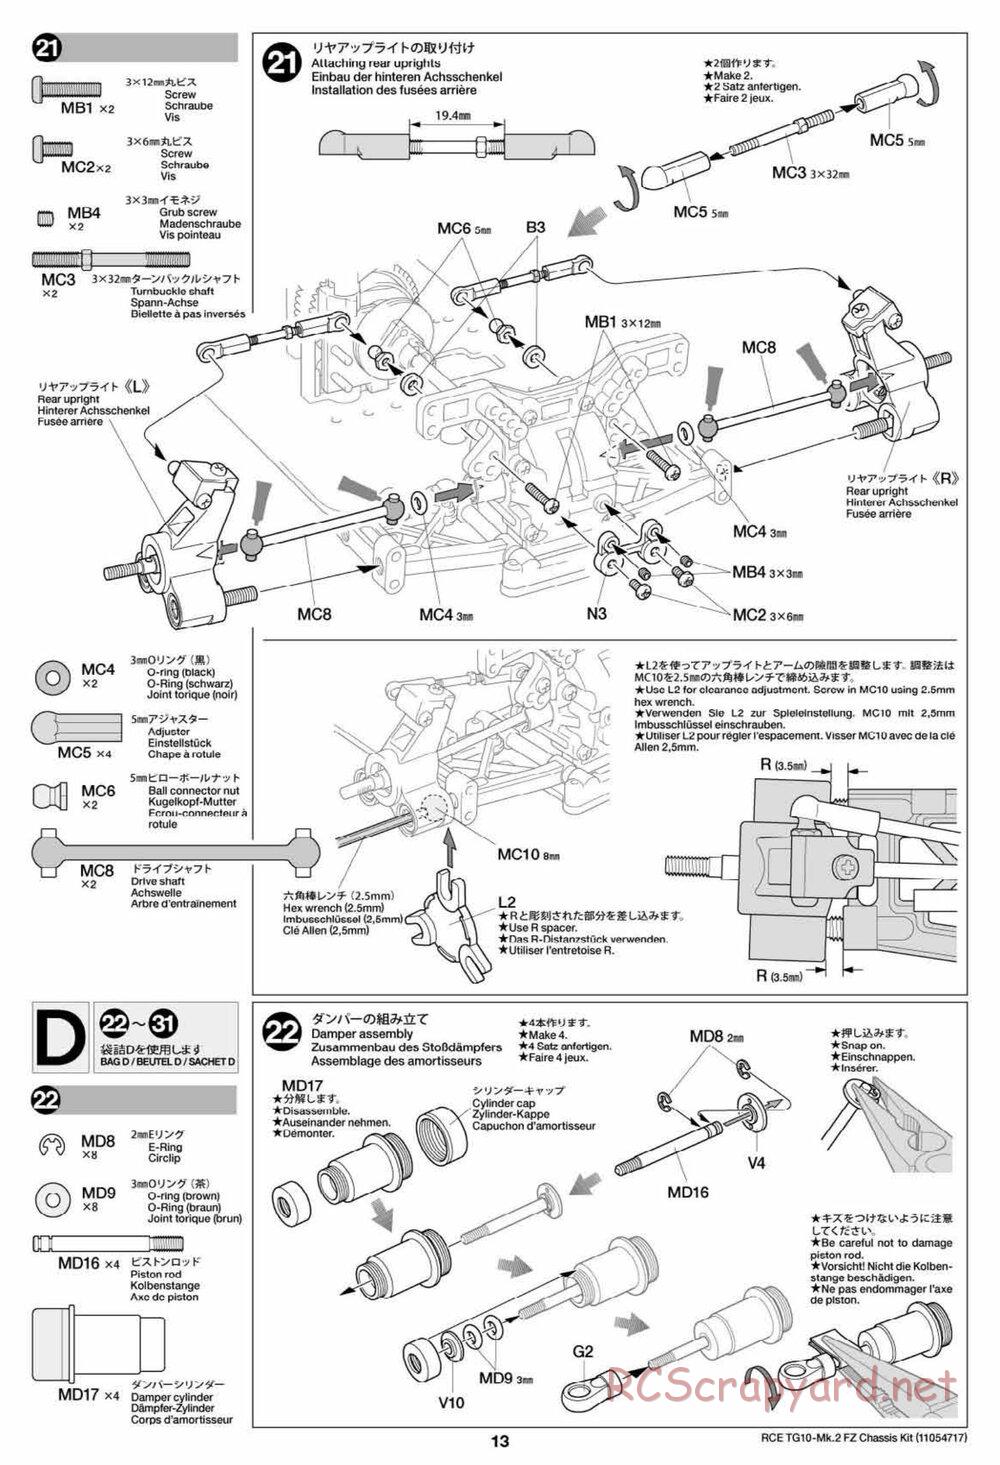 Tamiya - TG10 Mk.2 FZ Chassis - Manual - Page 13